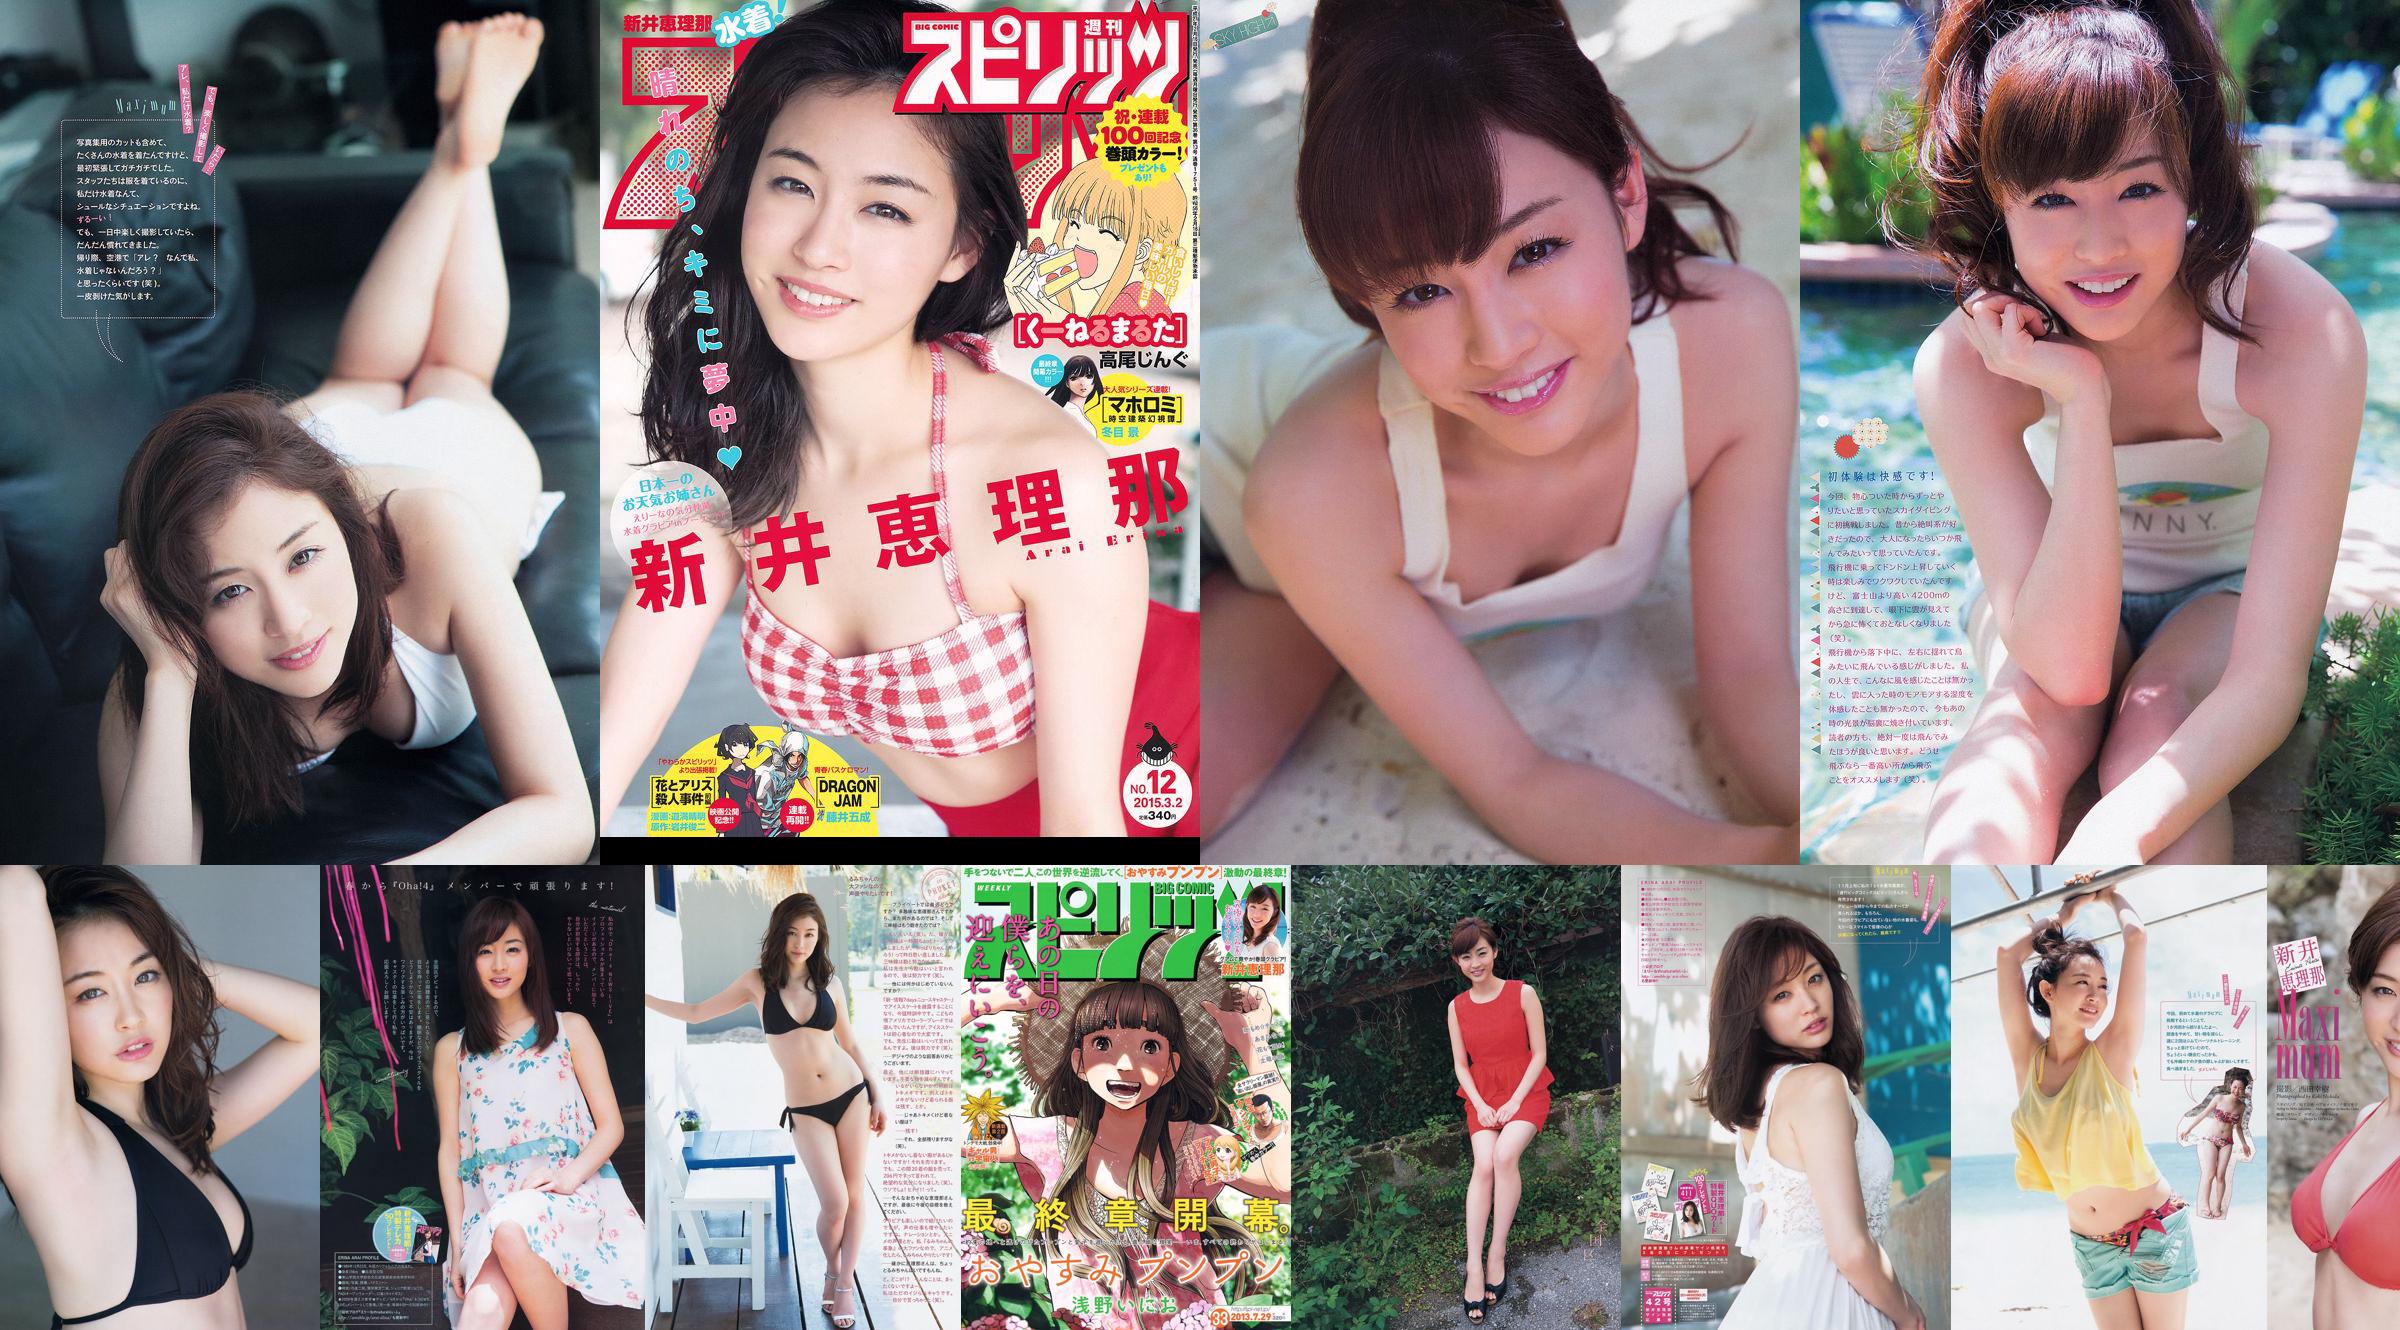 Haruka Shimazaki Yui Yokoyama Moeno Nito Ayame Misaki Chinami Suzuki Nami Iwasaki [Playboy hebdomadaire] 2012 No.51 Photo Mori No.e0d411 Page 1